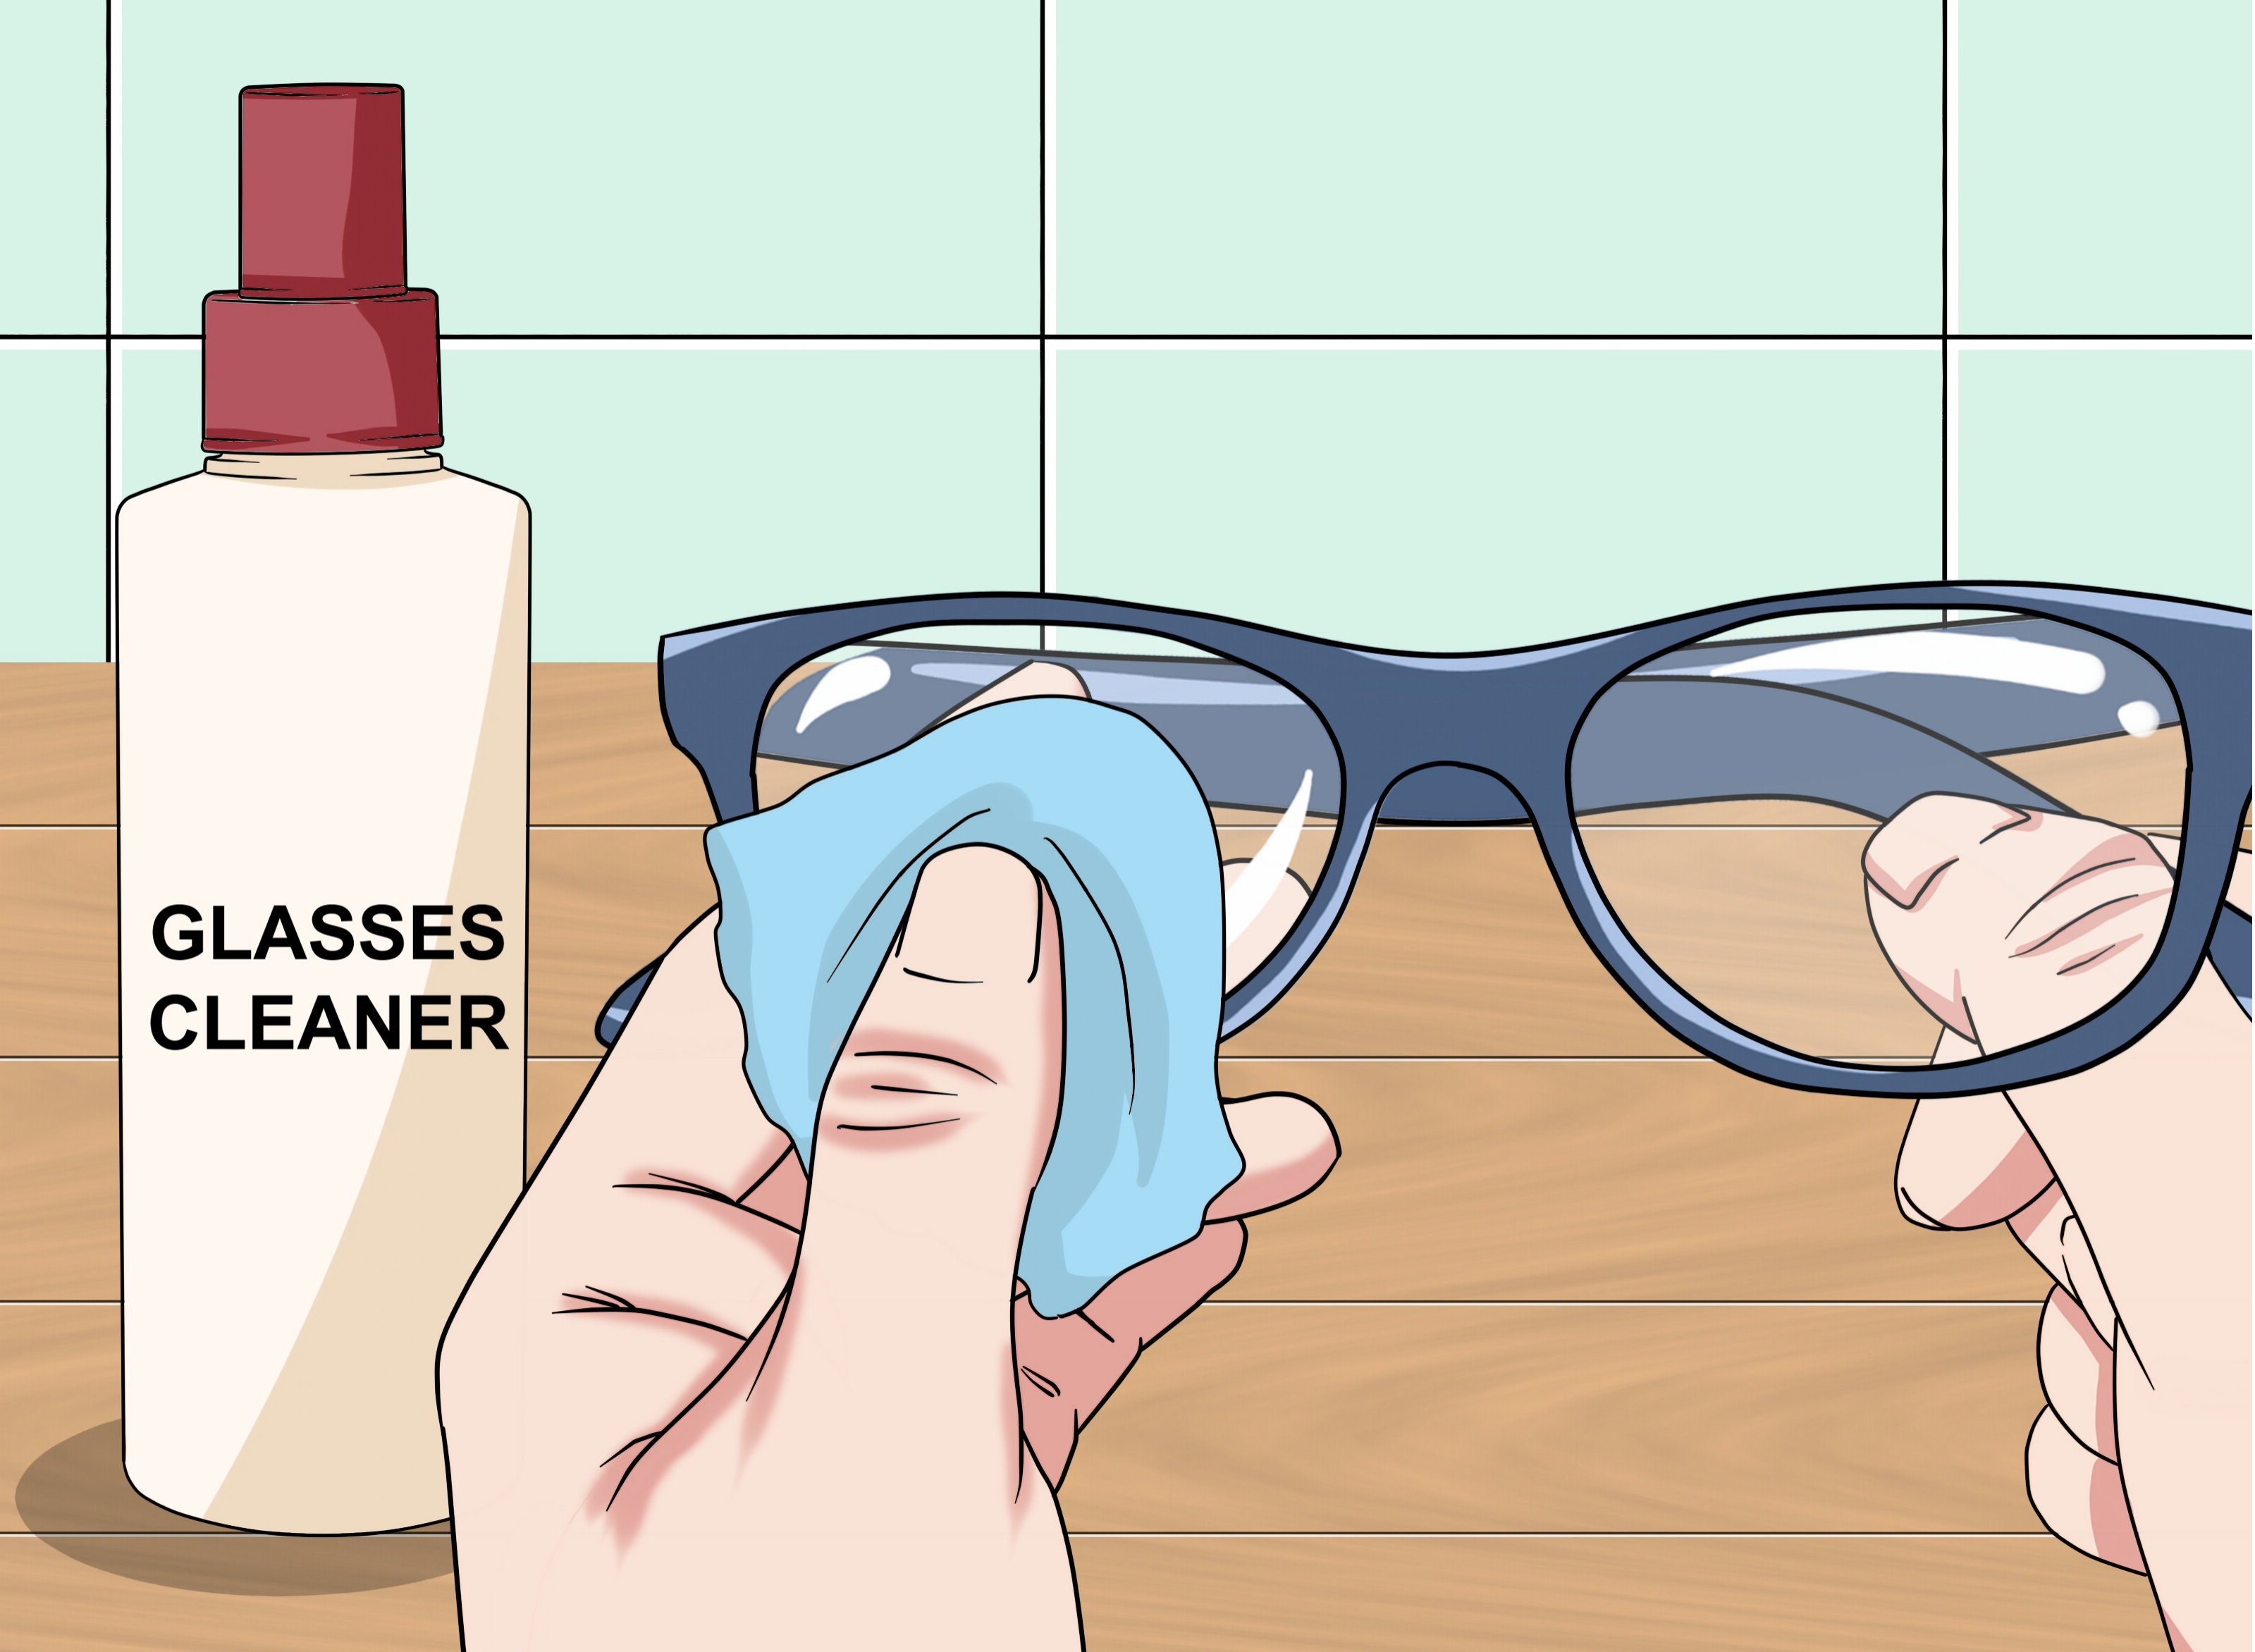 ¿Ha limpiado sus anteojos de la manera incorrecta?